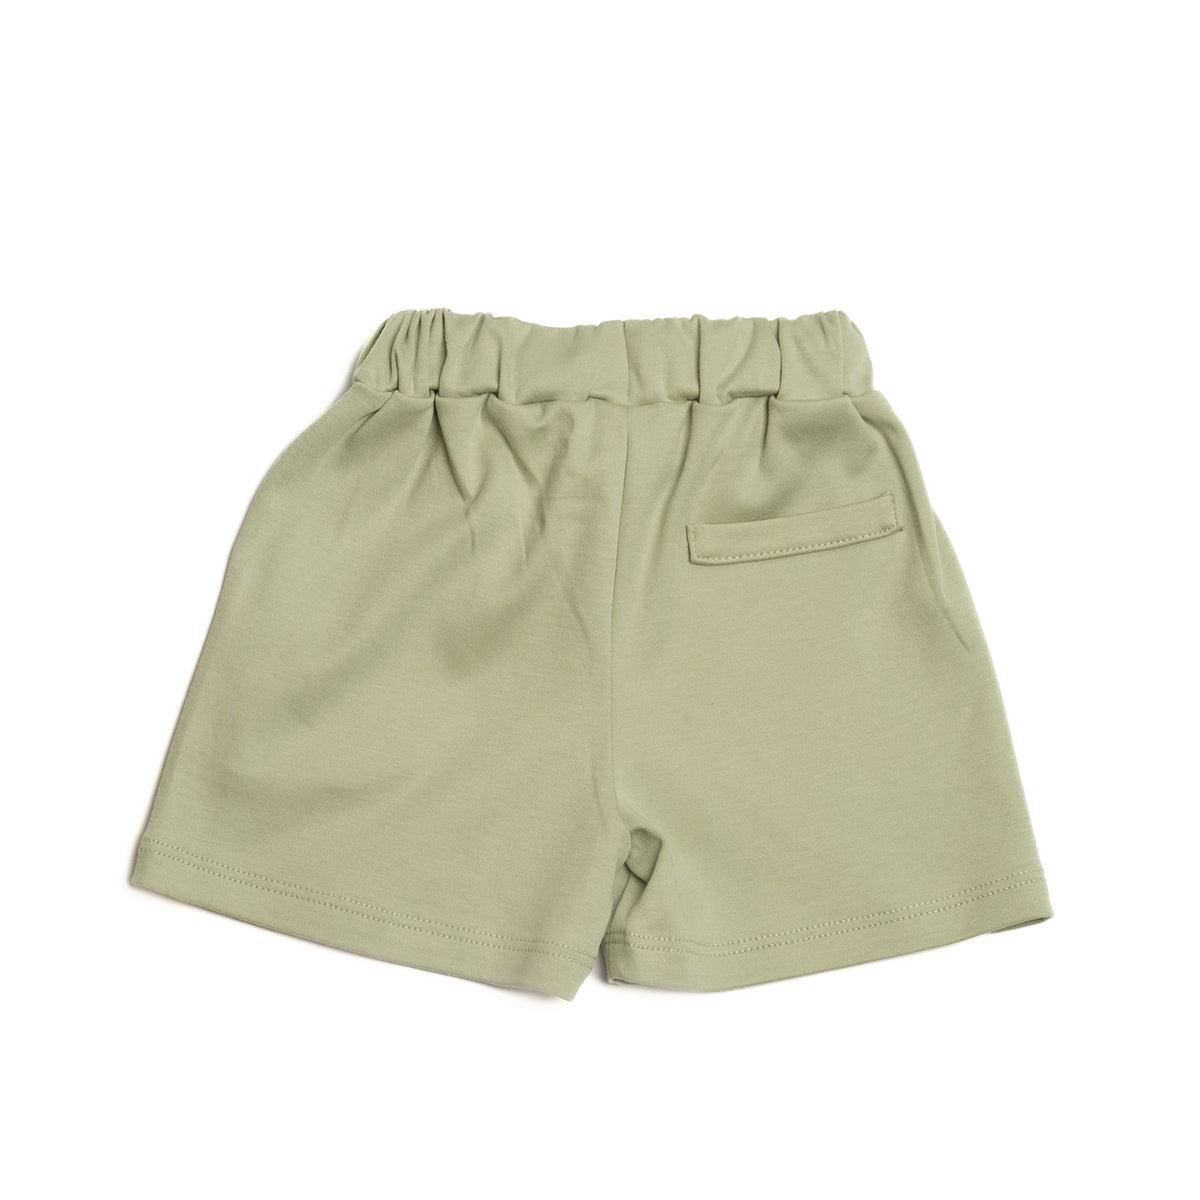 Comfy shorts - Light olive